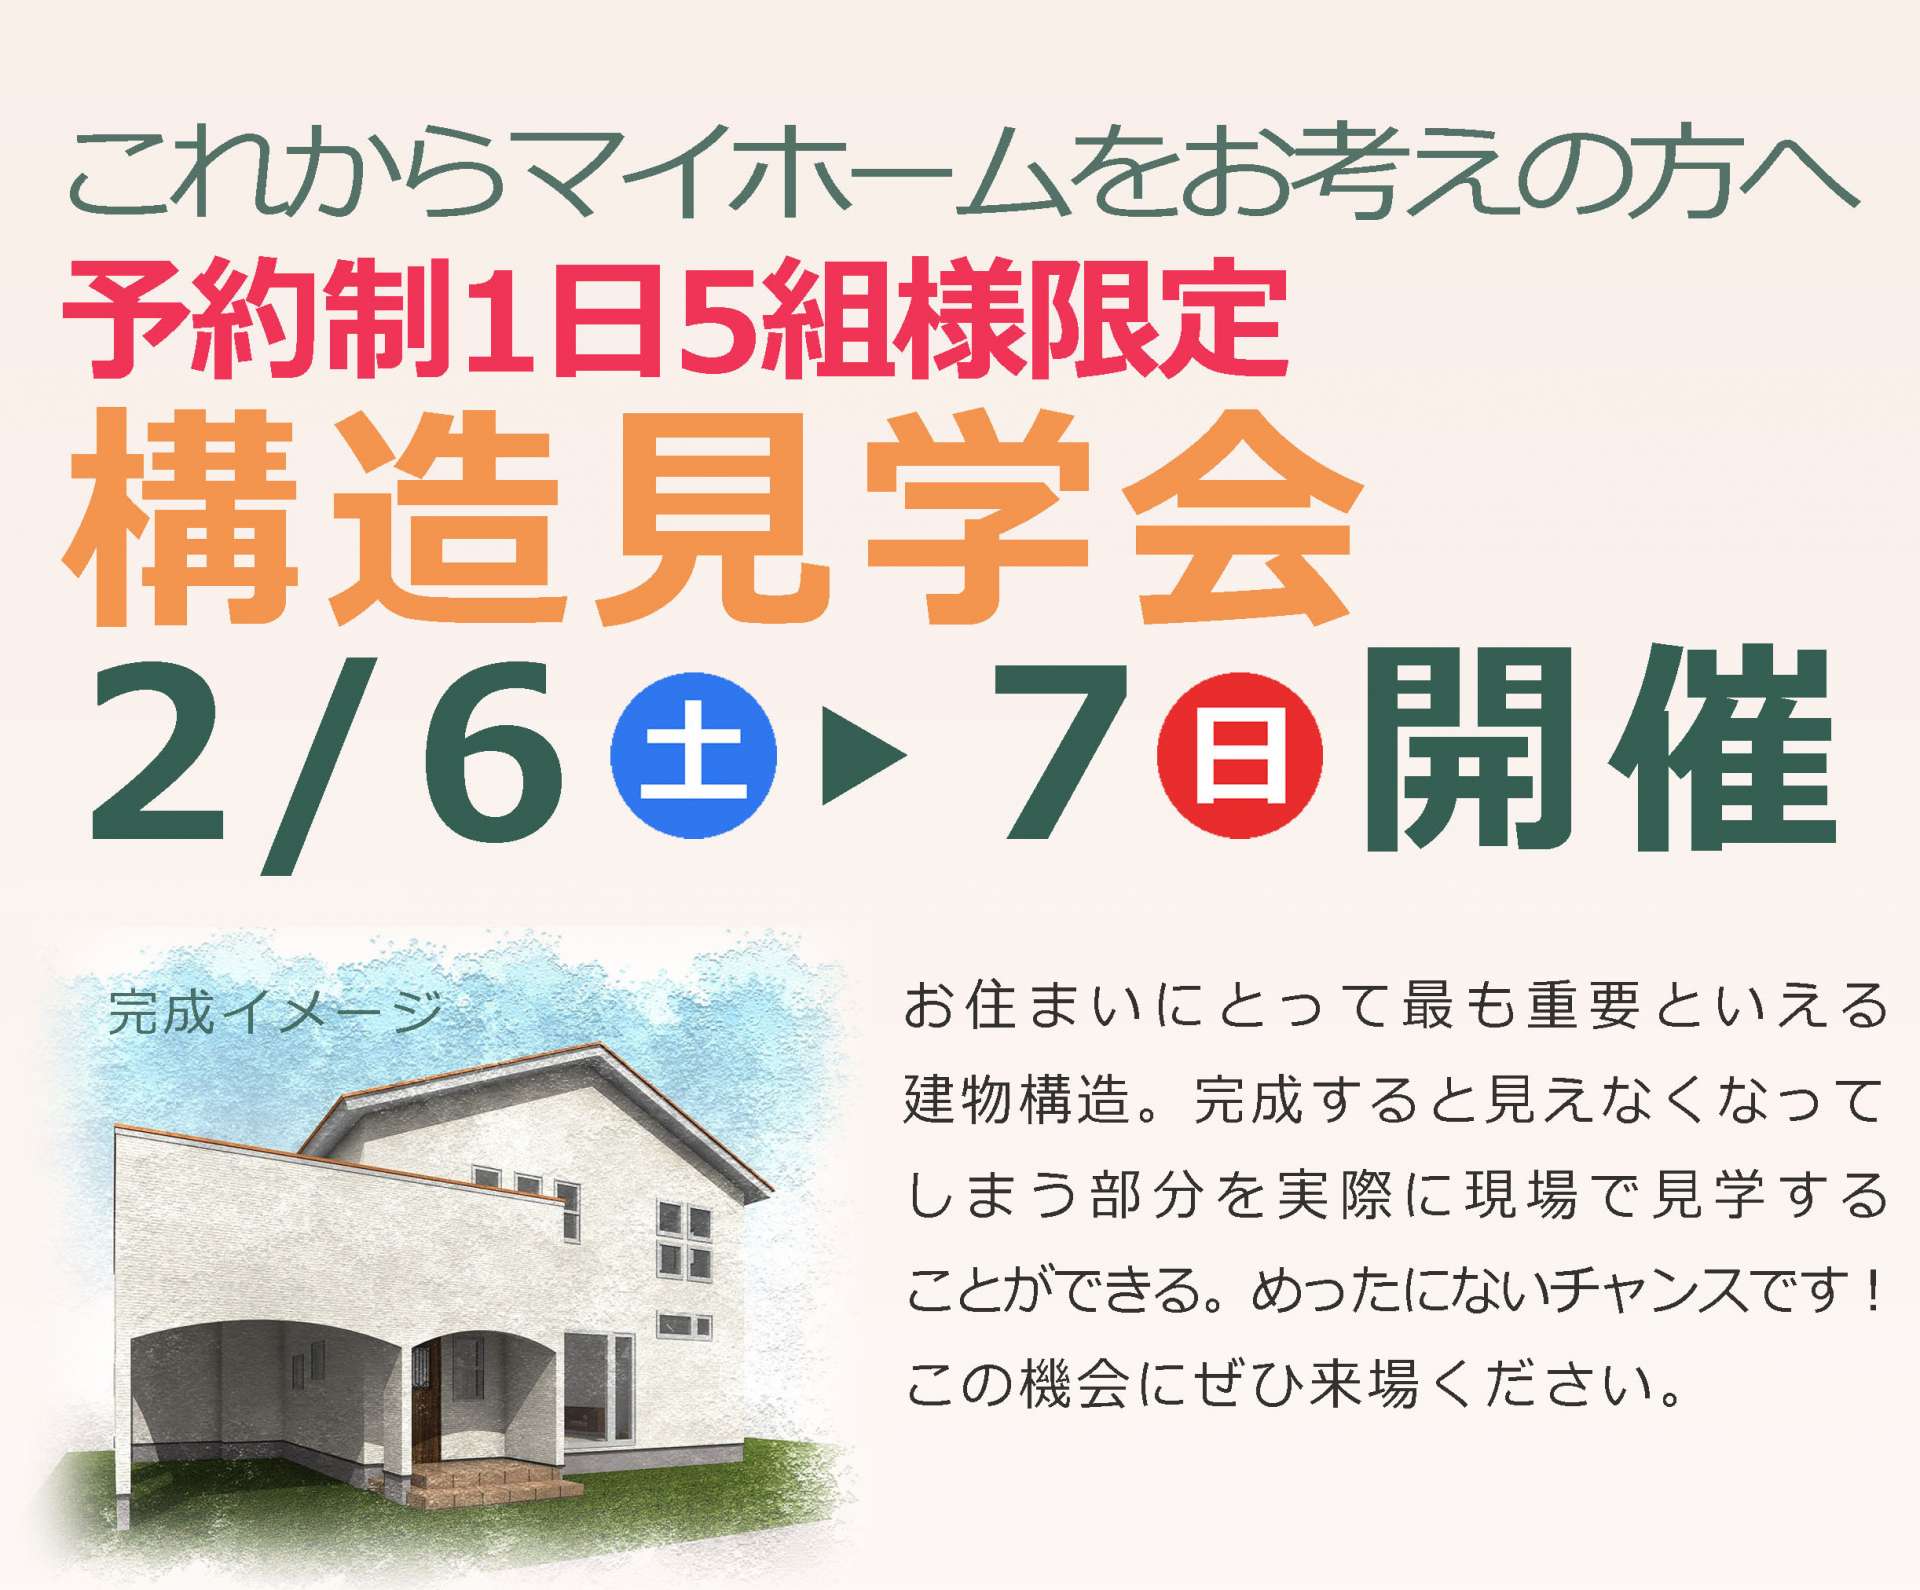 2月6日(土)・7(日)構造見学会のお知らせ